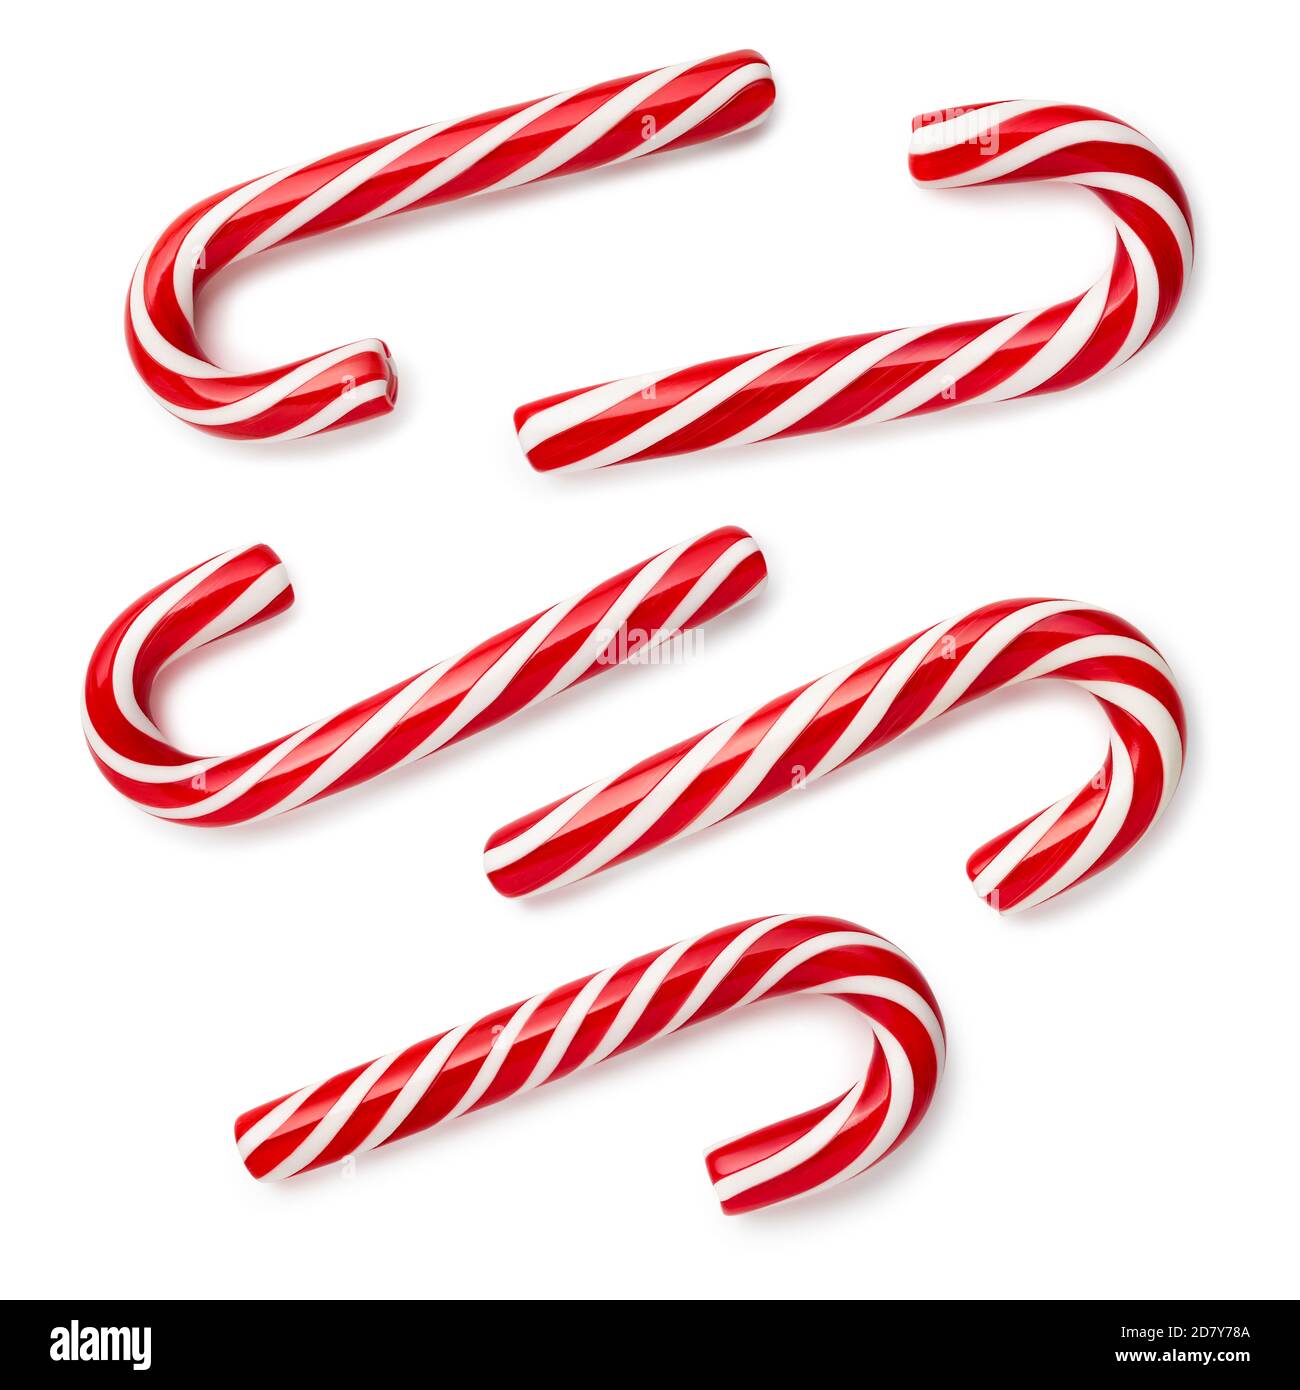 Candy Cane - cadeau de Noël classique. Ensemble de bonbons festifs sur fond blanc. Flat lay, vue de dessus Banque D'Images